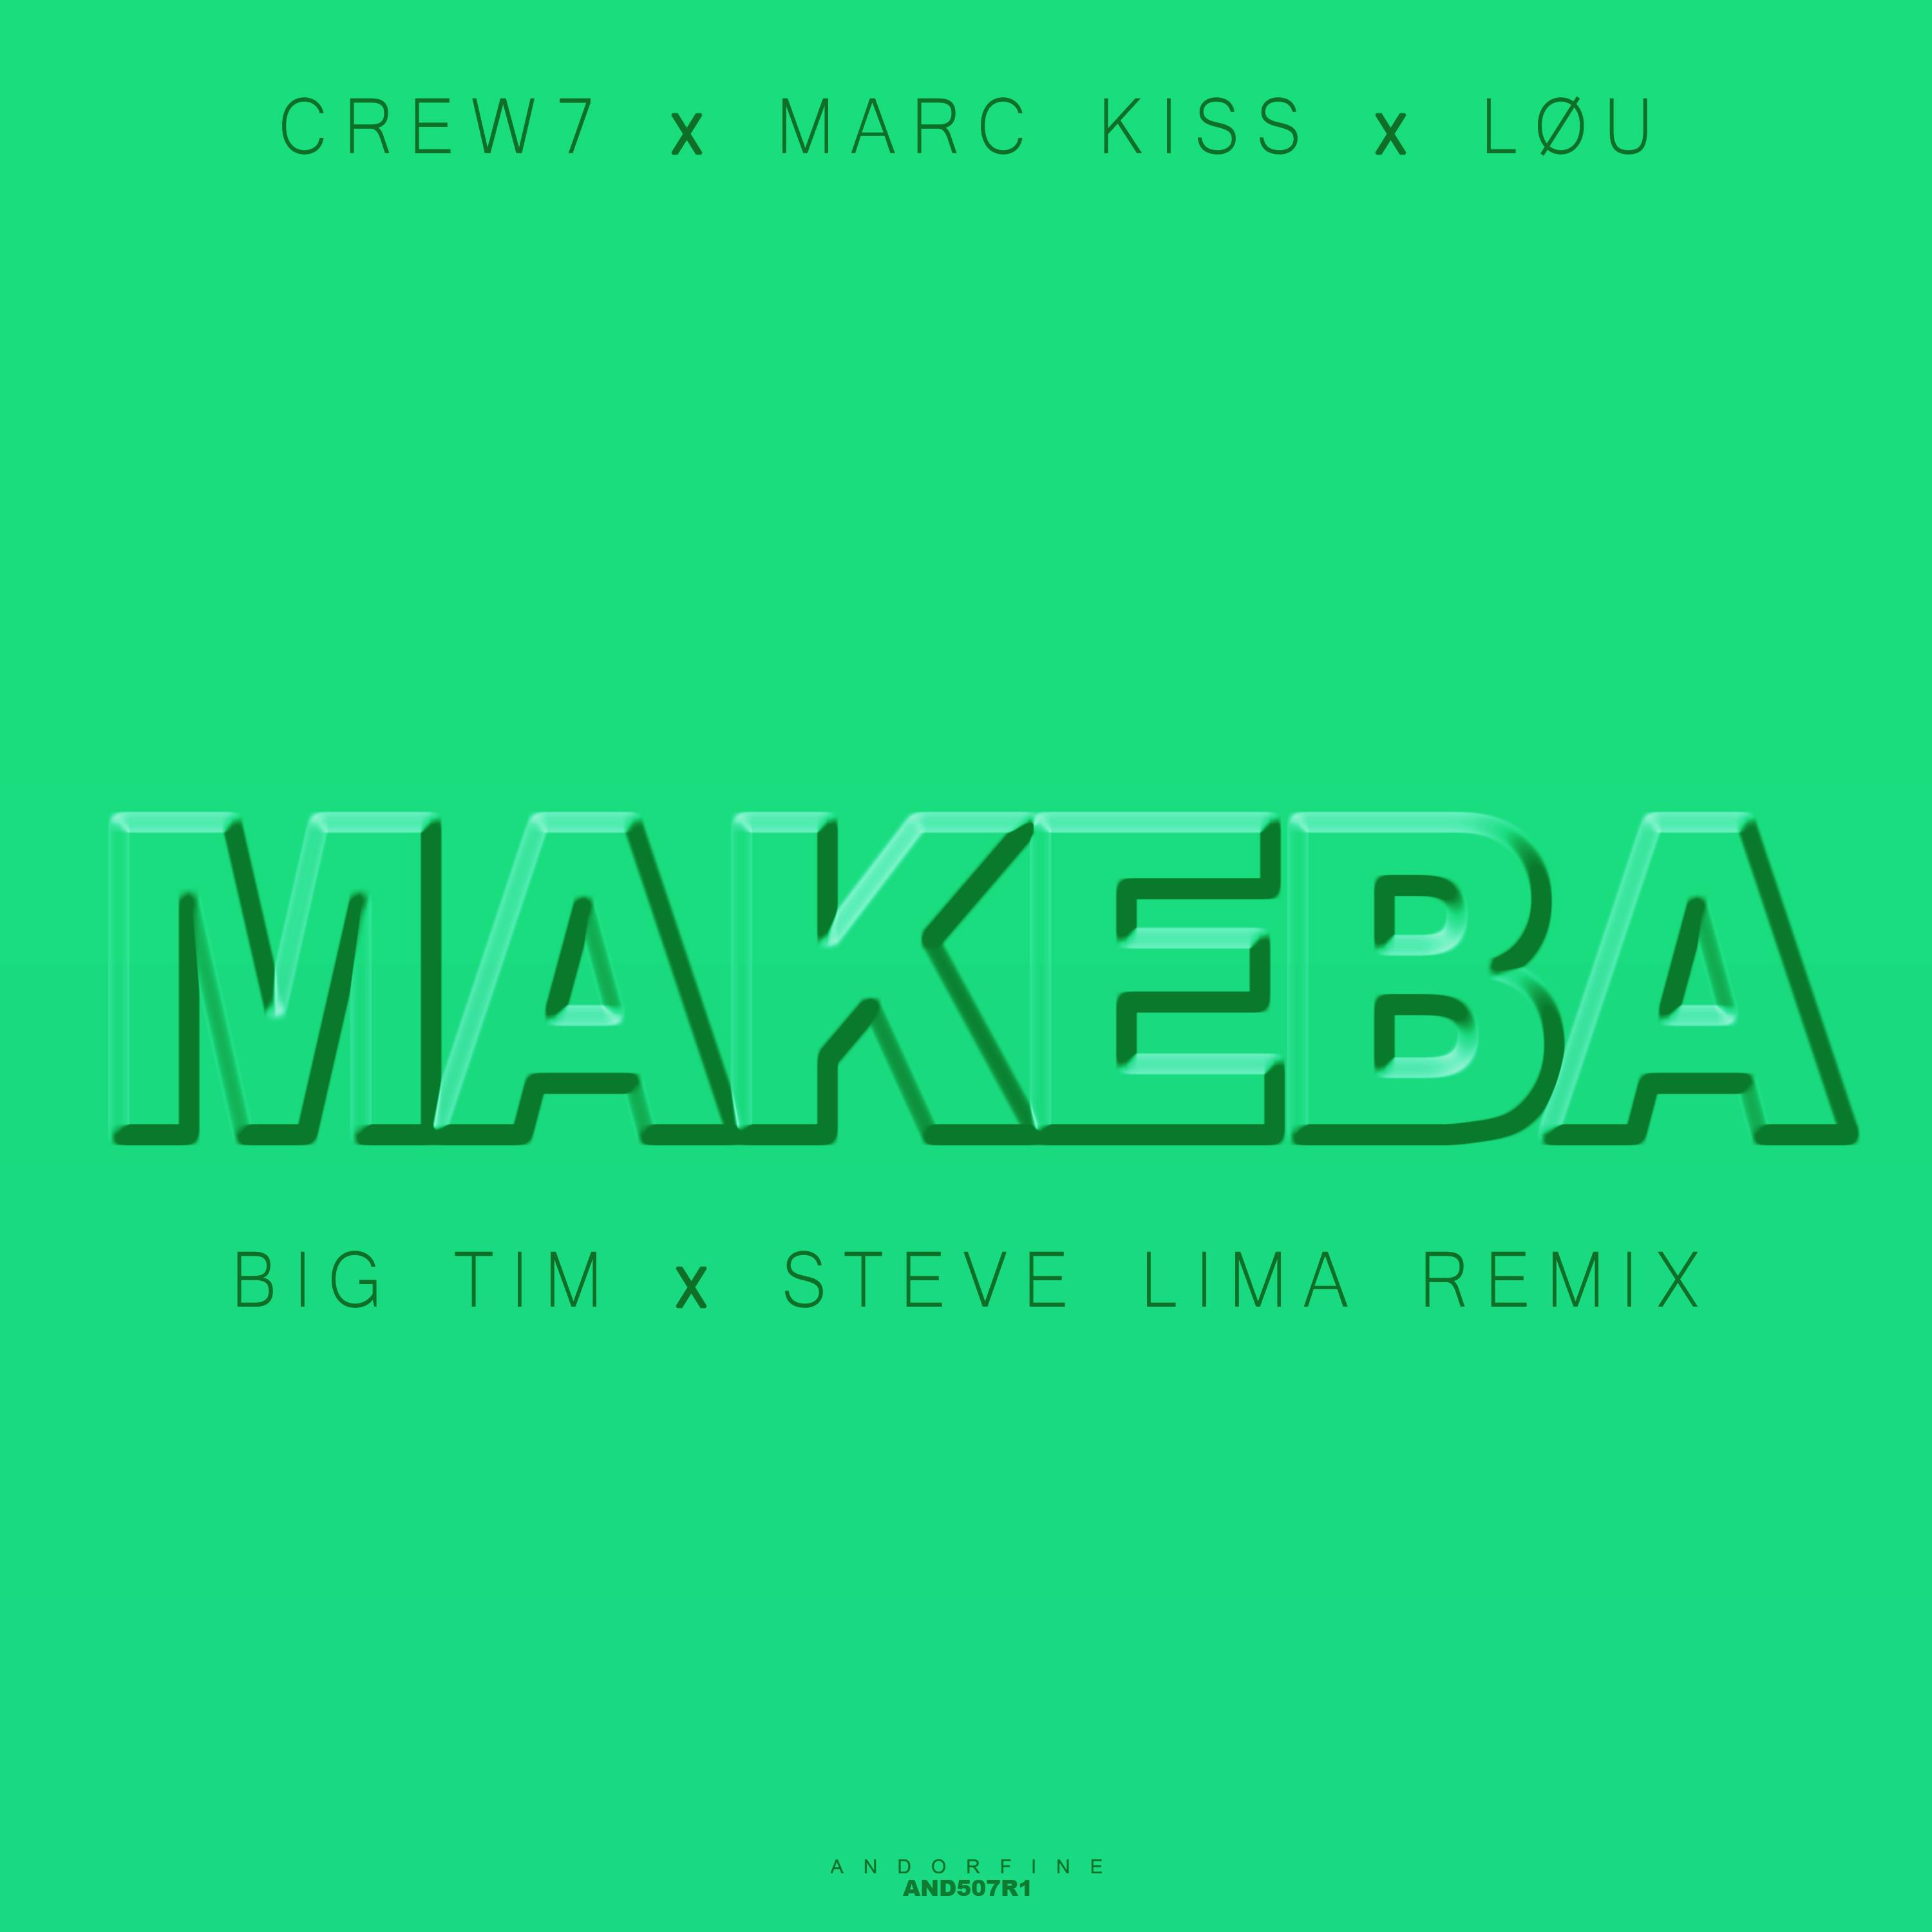 Crew 7 - Makeba (Big Tim X Steve Lima Remix)